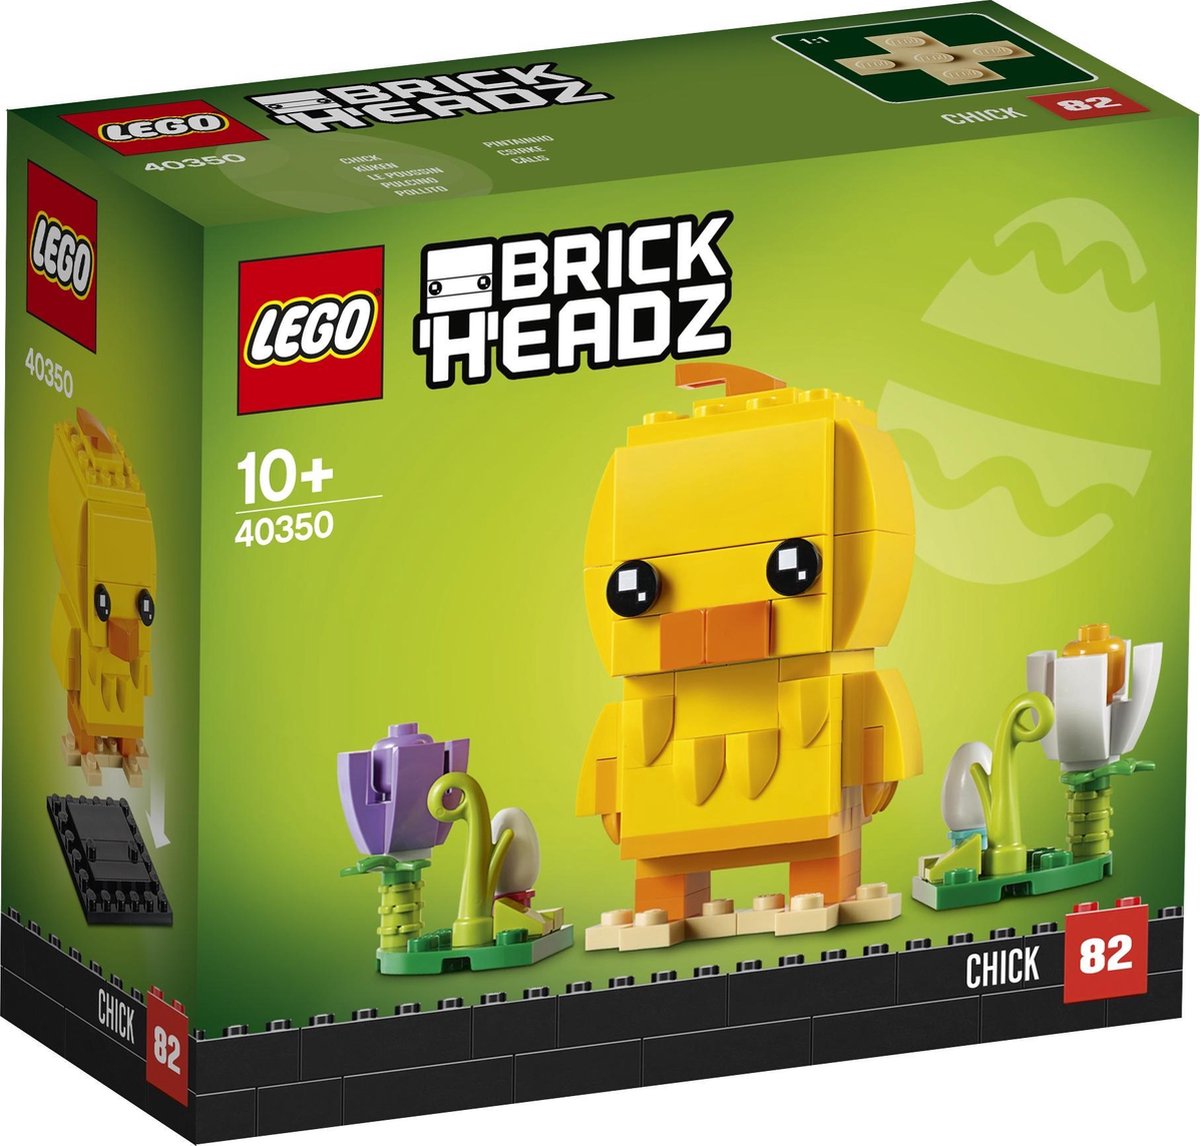 LEGO BrickHeadz Paaskuiken 40350 bol.com